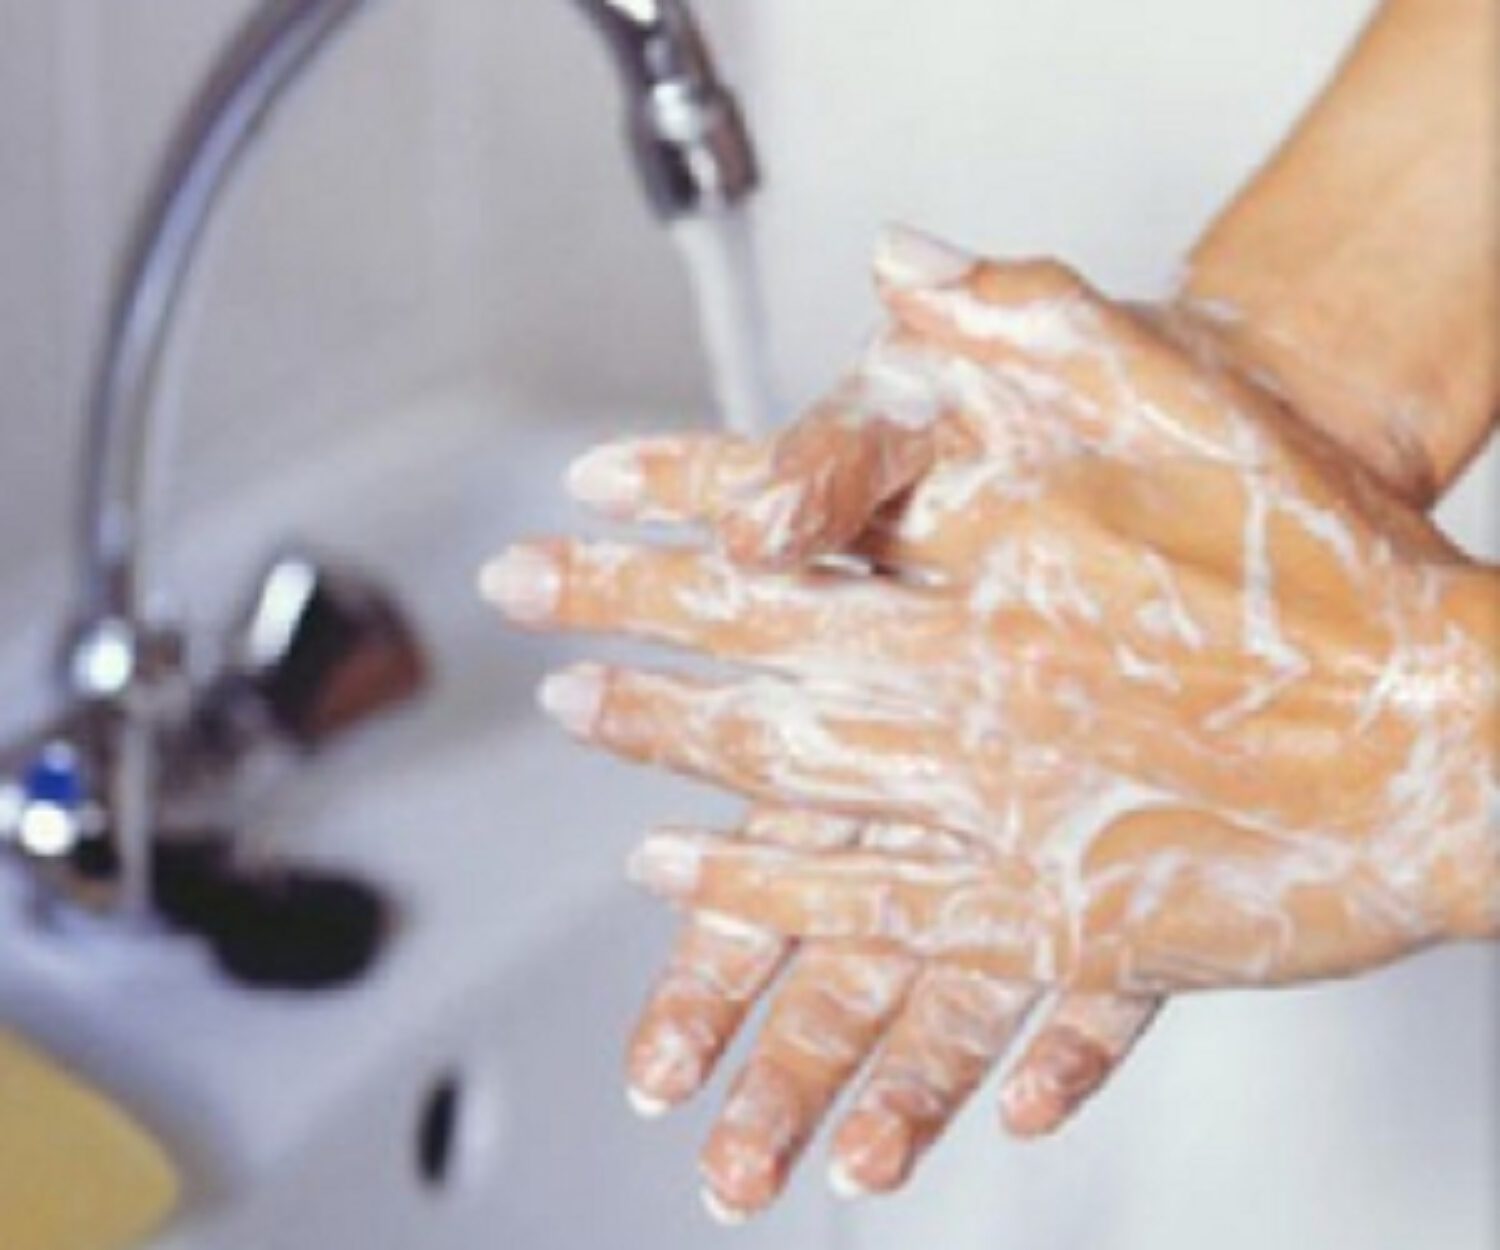 Мытье рук относится к